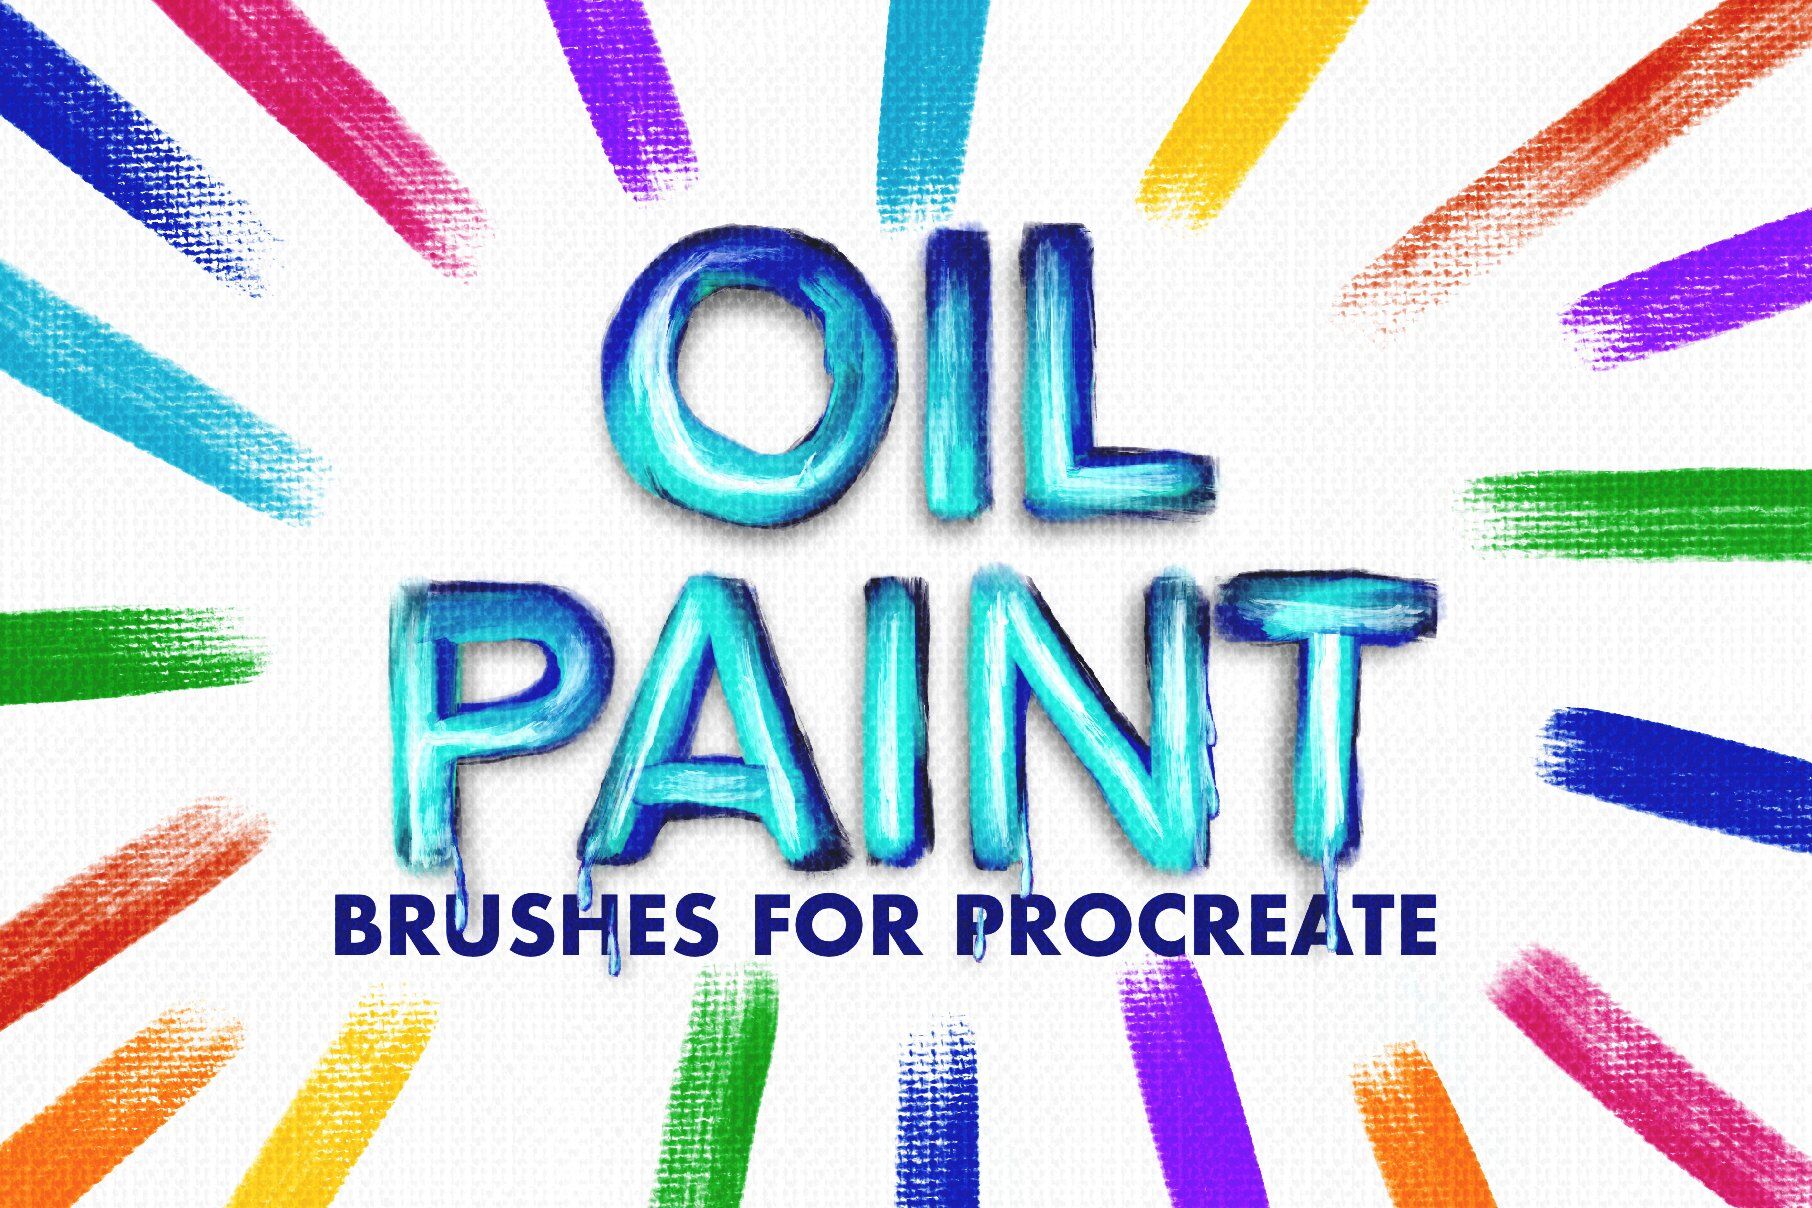 Oil Paint Brush Illustrator  Order Oil Paint Brushes For